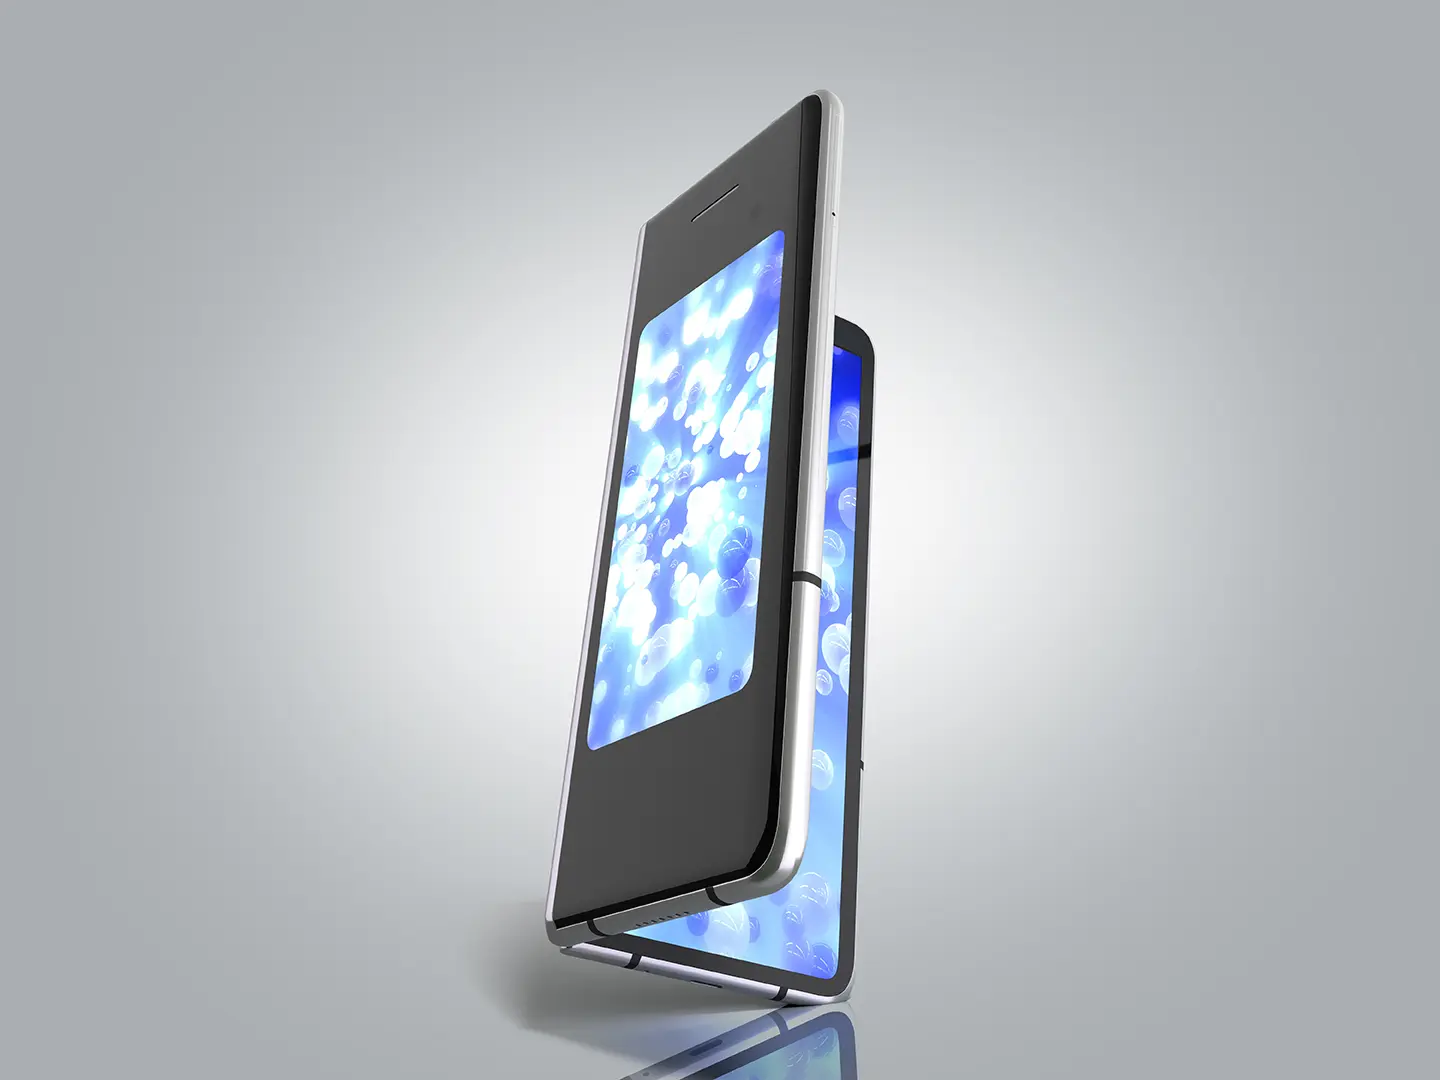 teléfono plegable mostrando que Samsung lanzaría un teléfono plegable el próximo año.